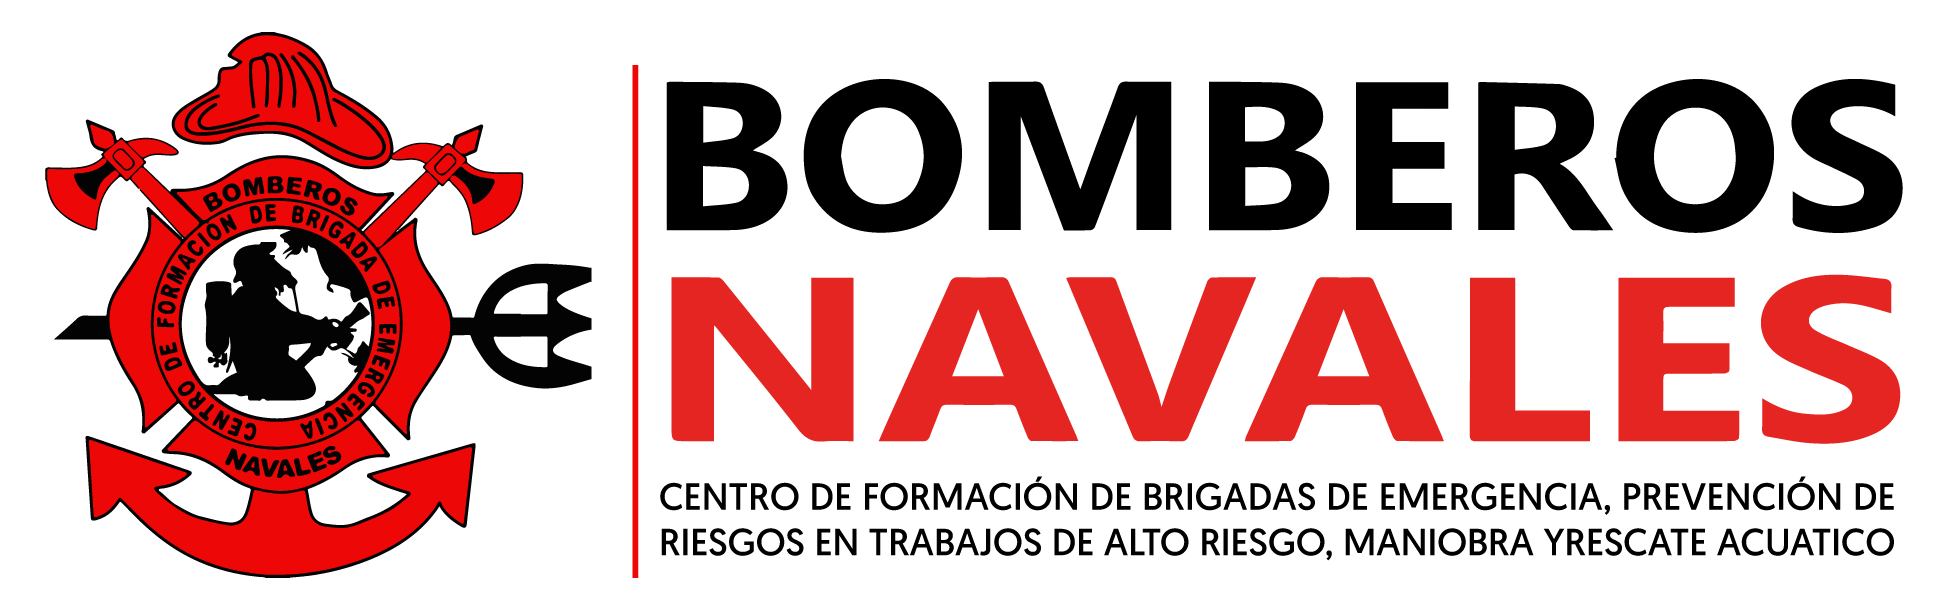 BOMBEROS NAVALES